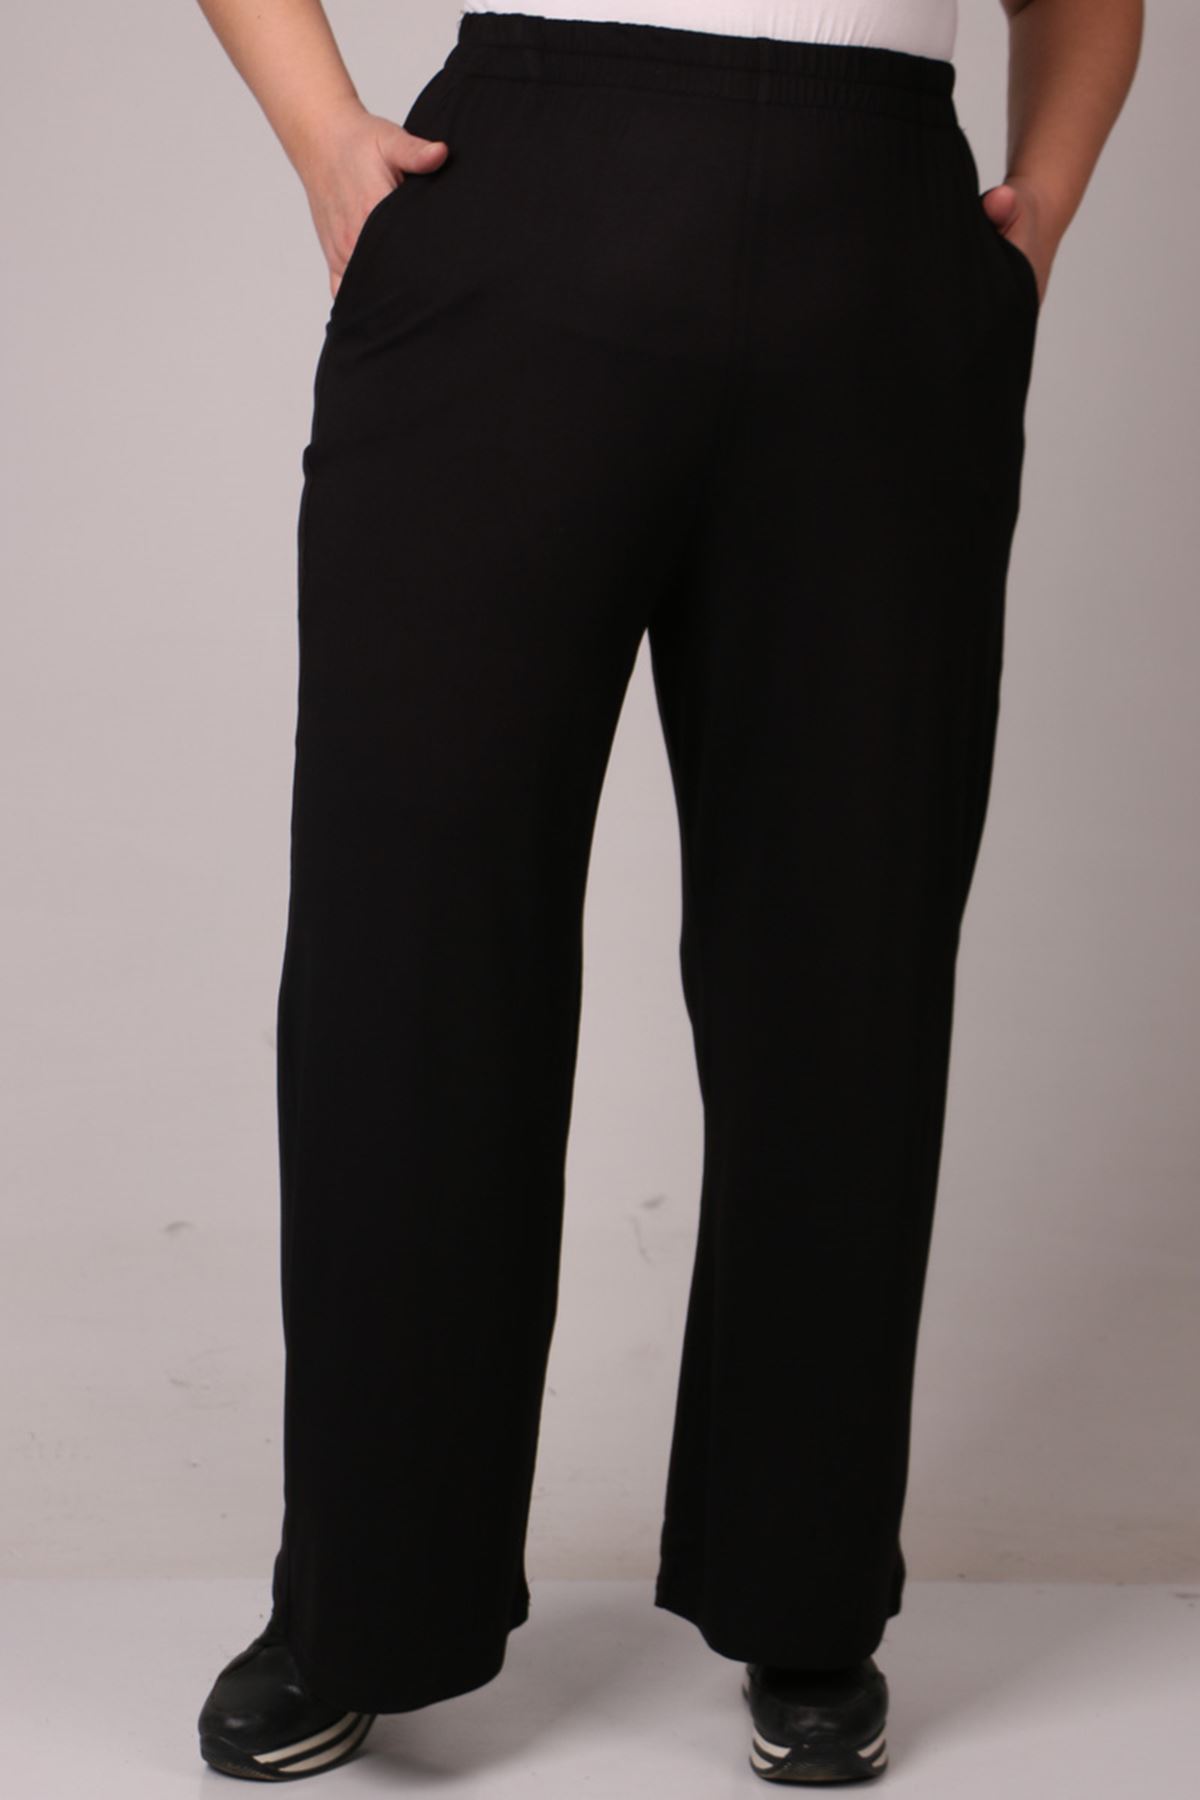 39000 Büyük Beden Yüksek Beli Lastikli Bol Paça Penye Pantolon - Siyah